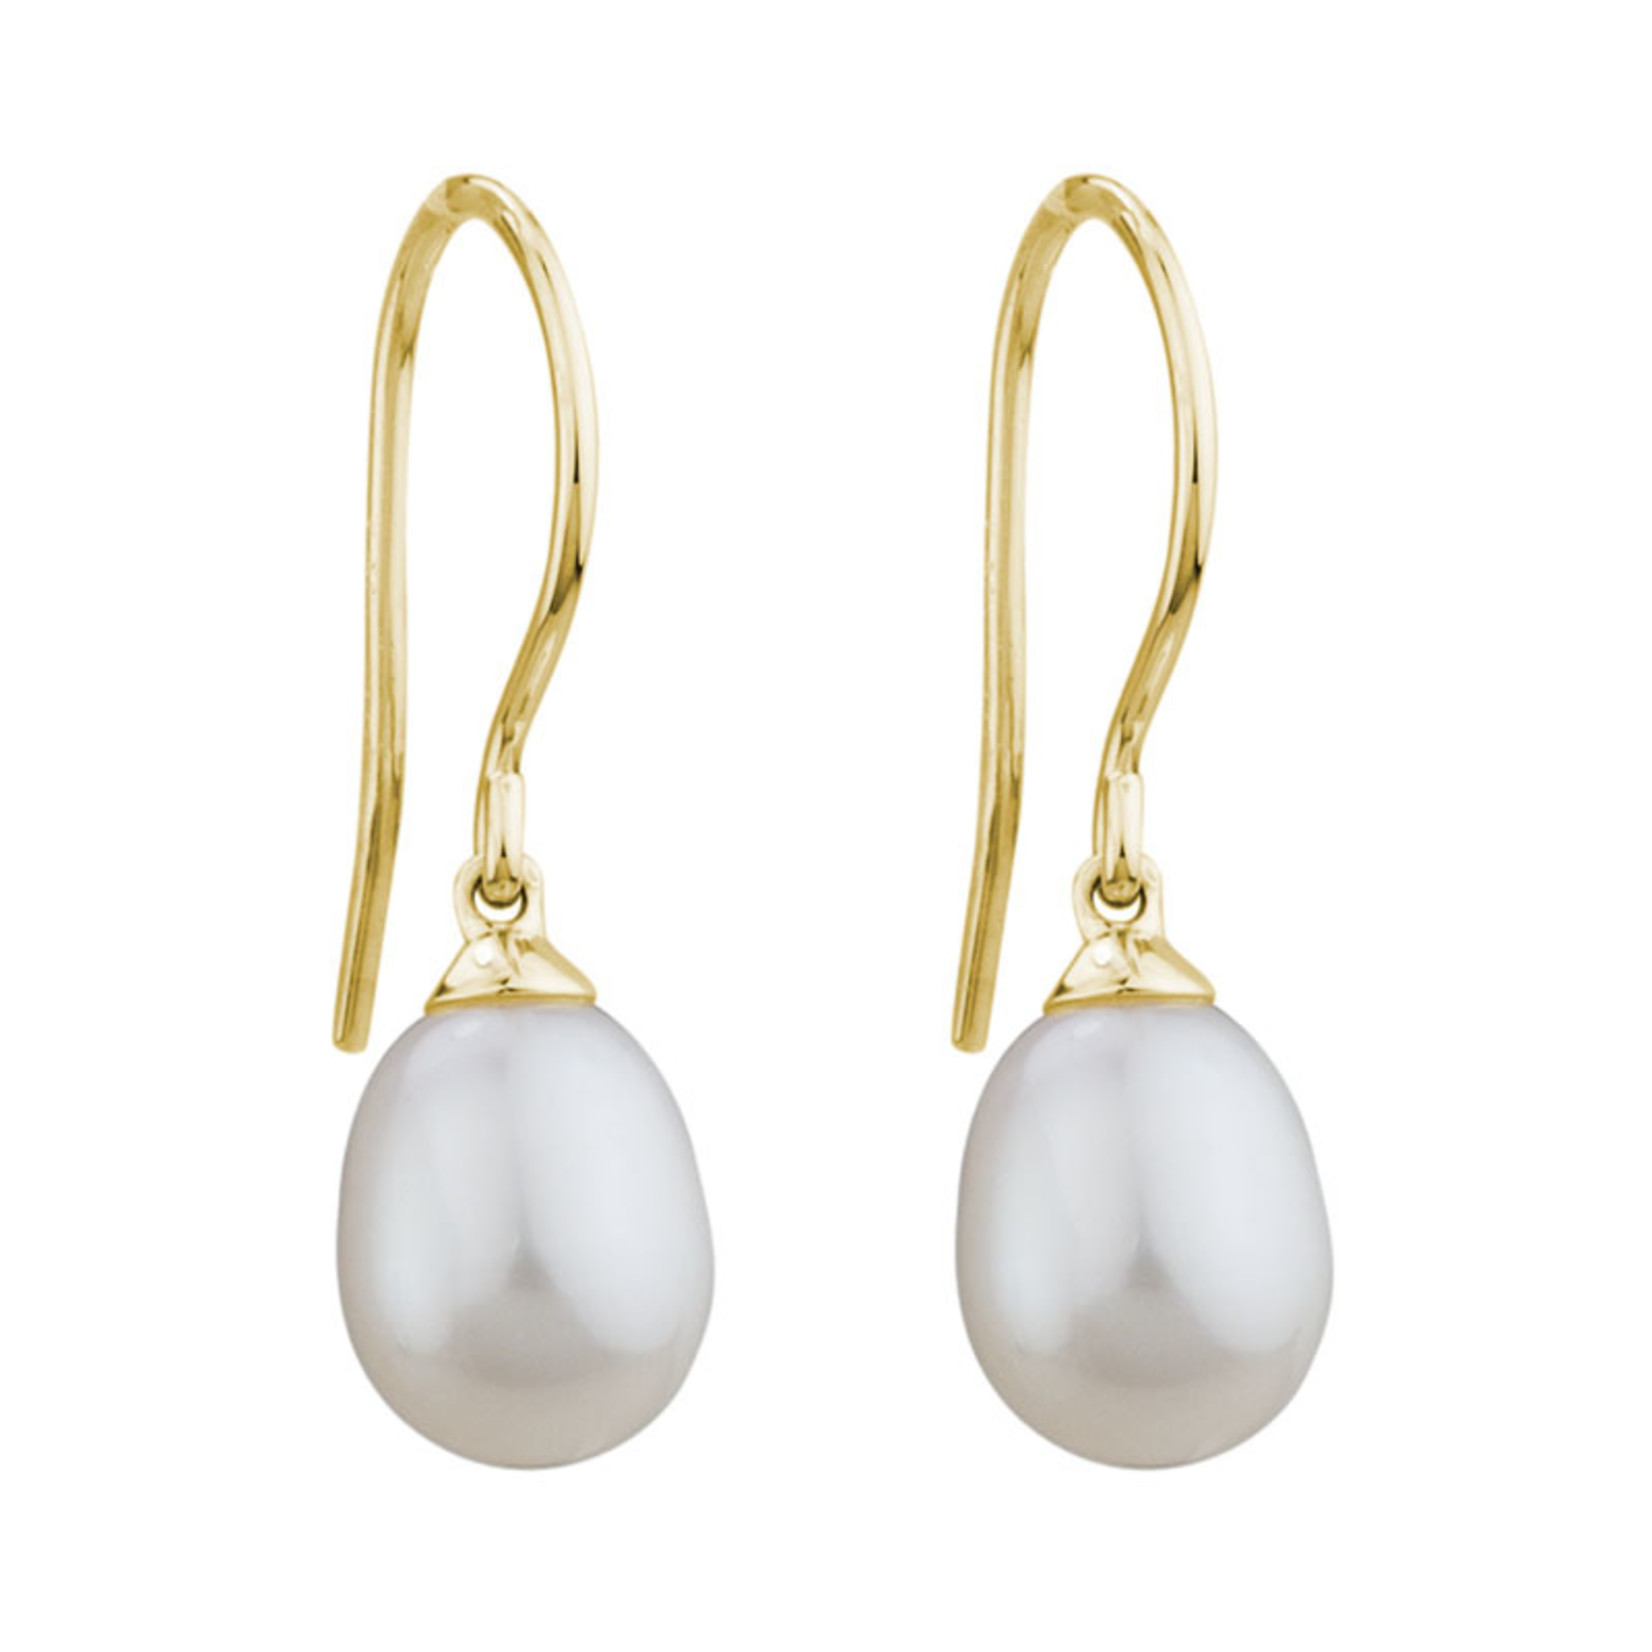 Artistry 14K Oval Freshwater Cultured Pearl Drop Earrings